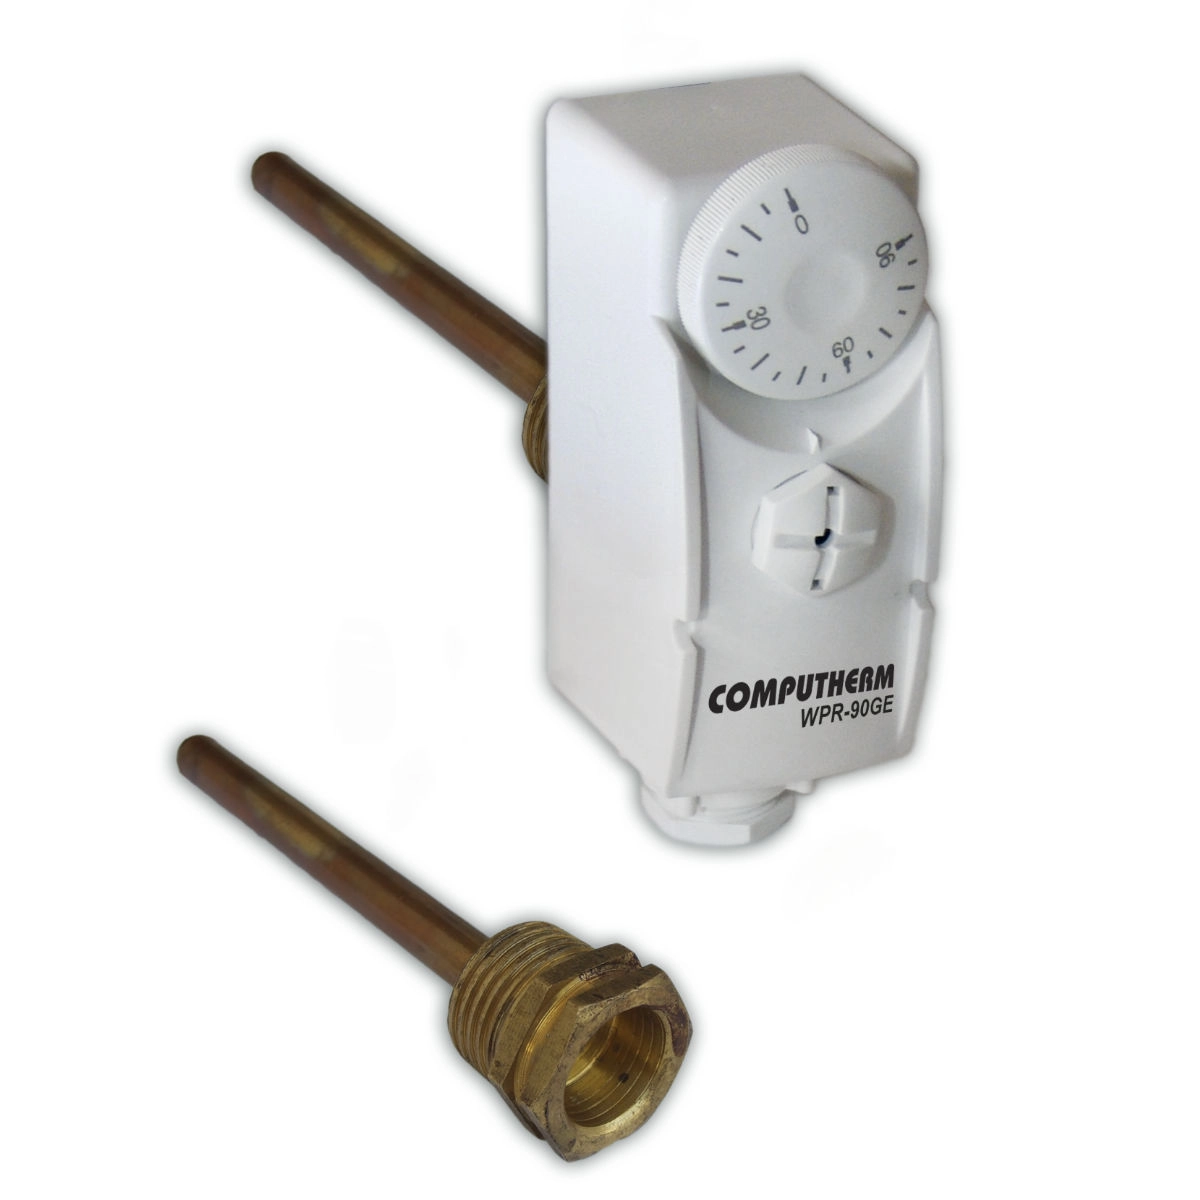 WPR-90GE uronski termostat